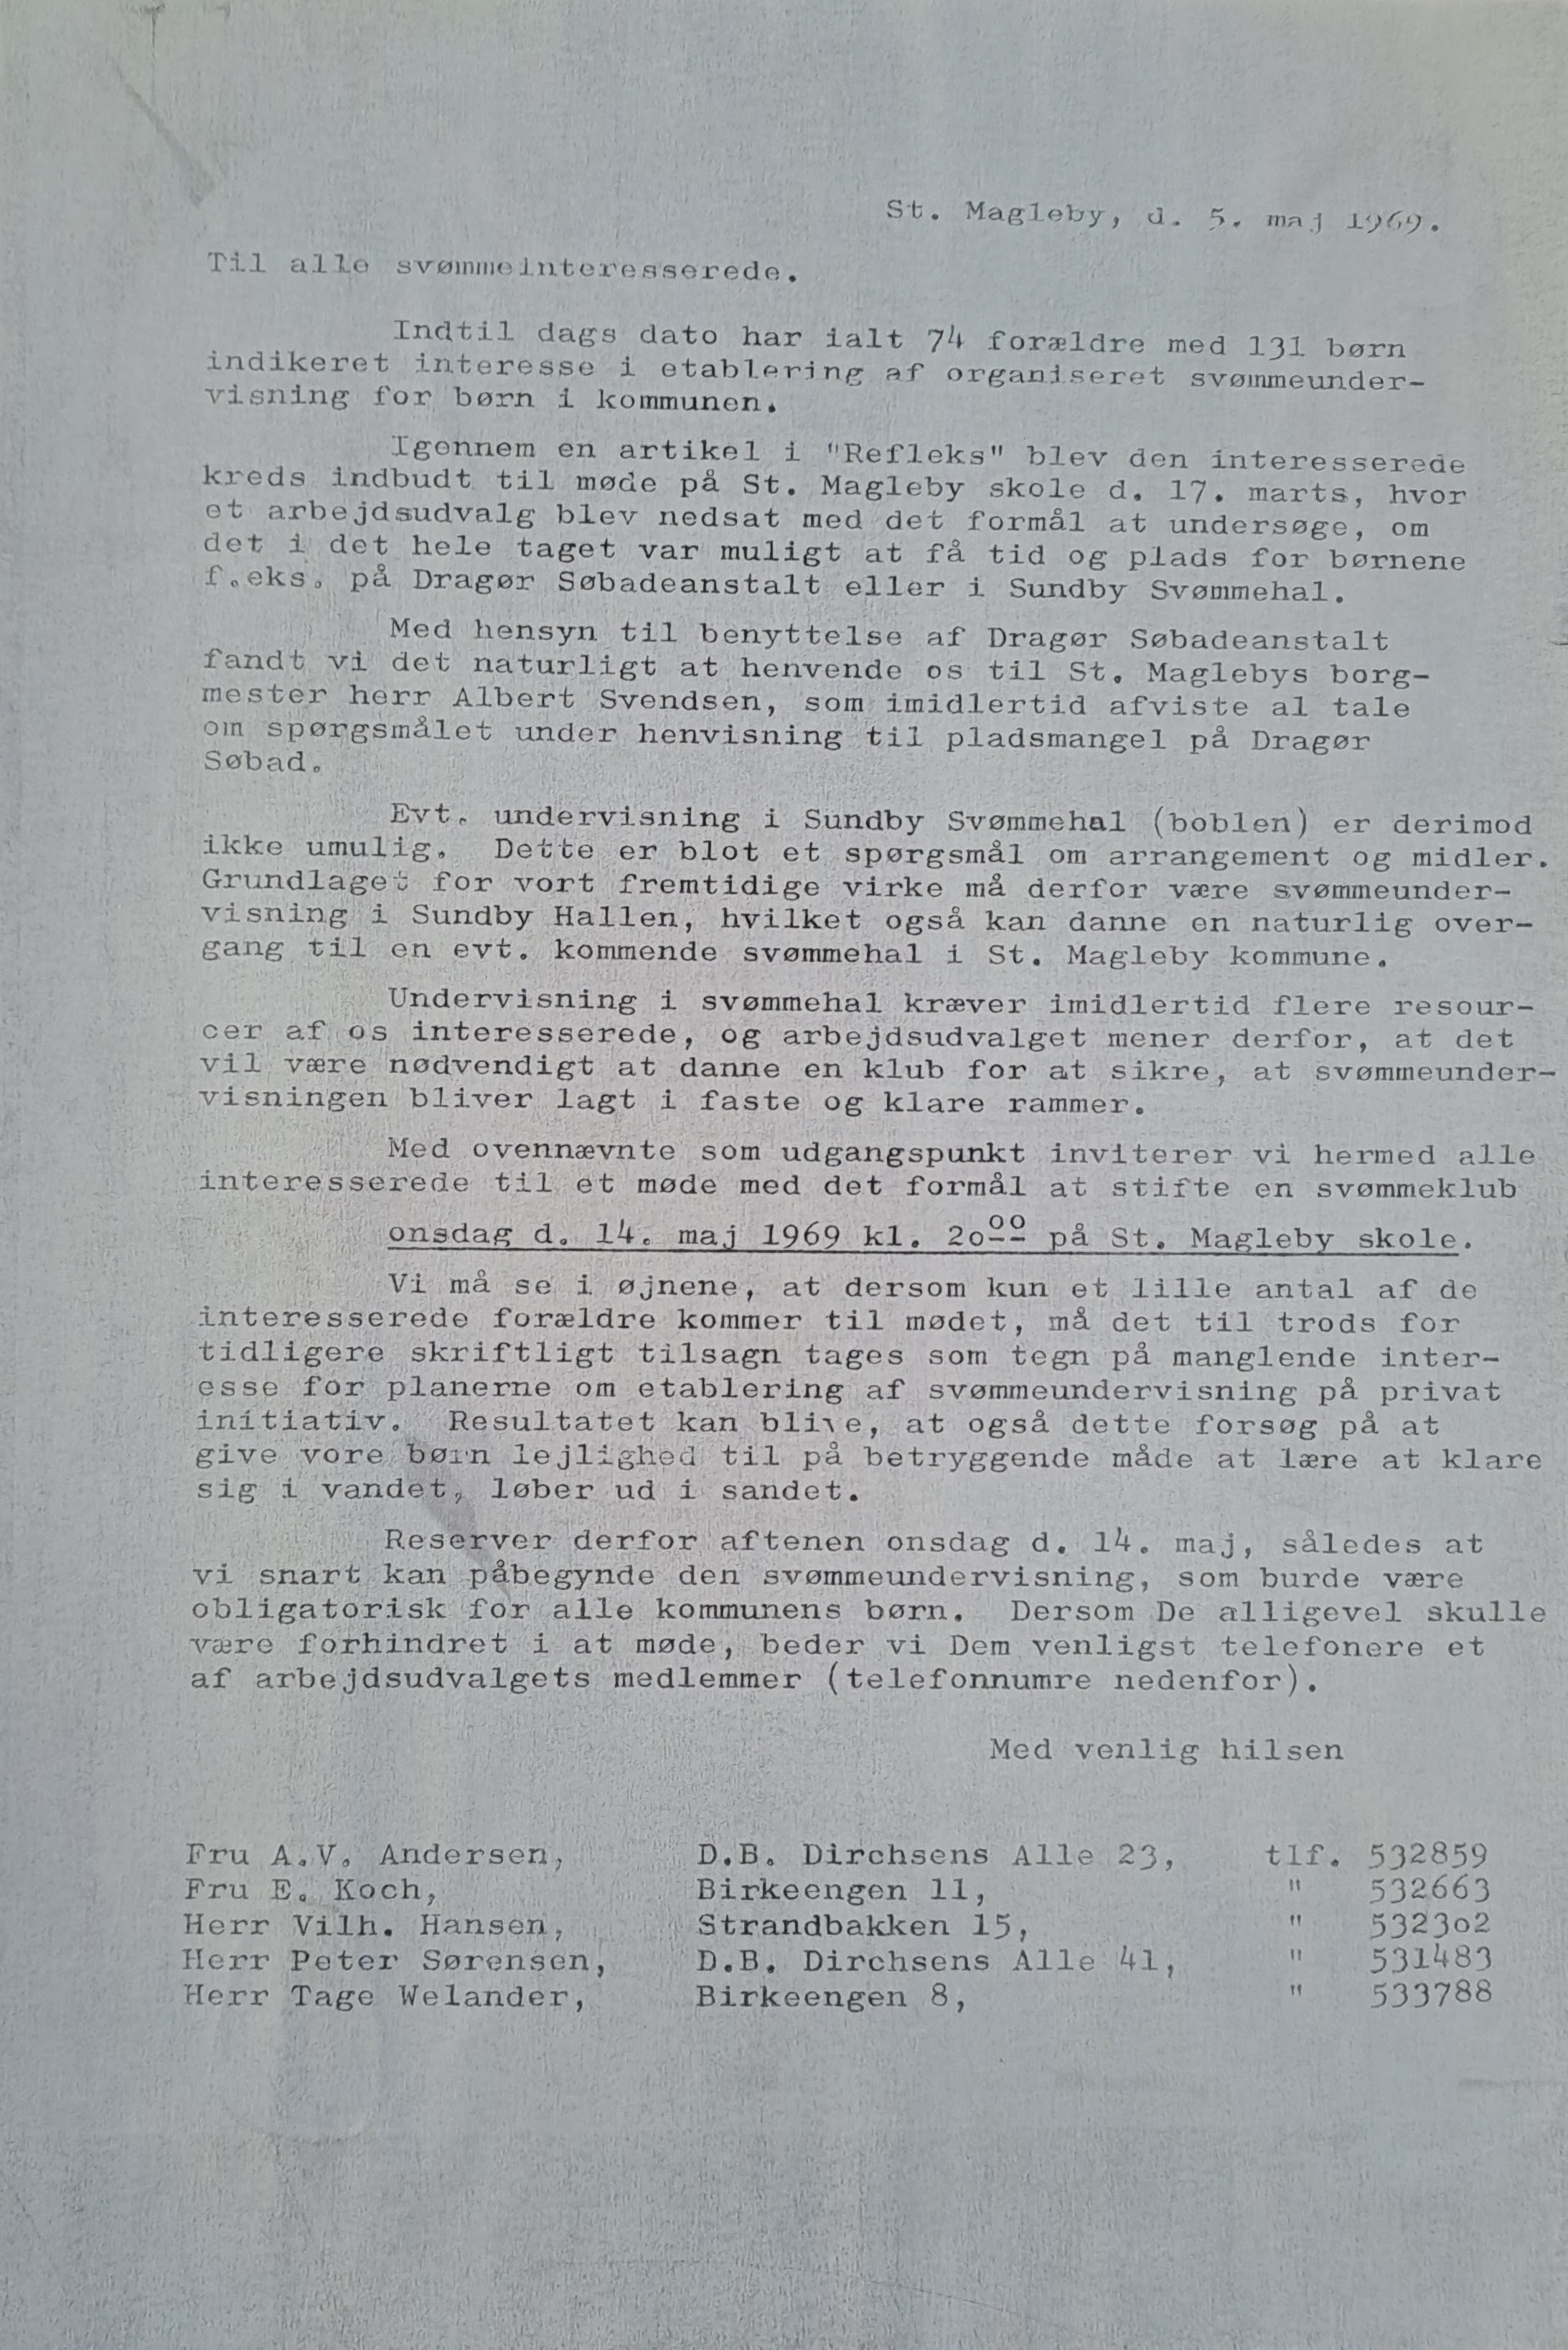 Pressemeddelelse udsendt før stiftelsen den 14. maj 1969. (Dragør Lokalarkiv)